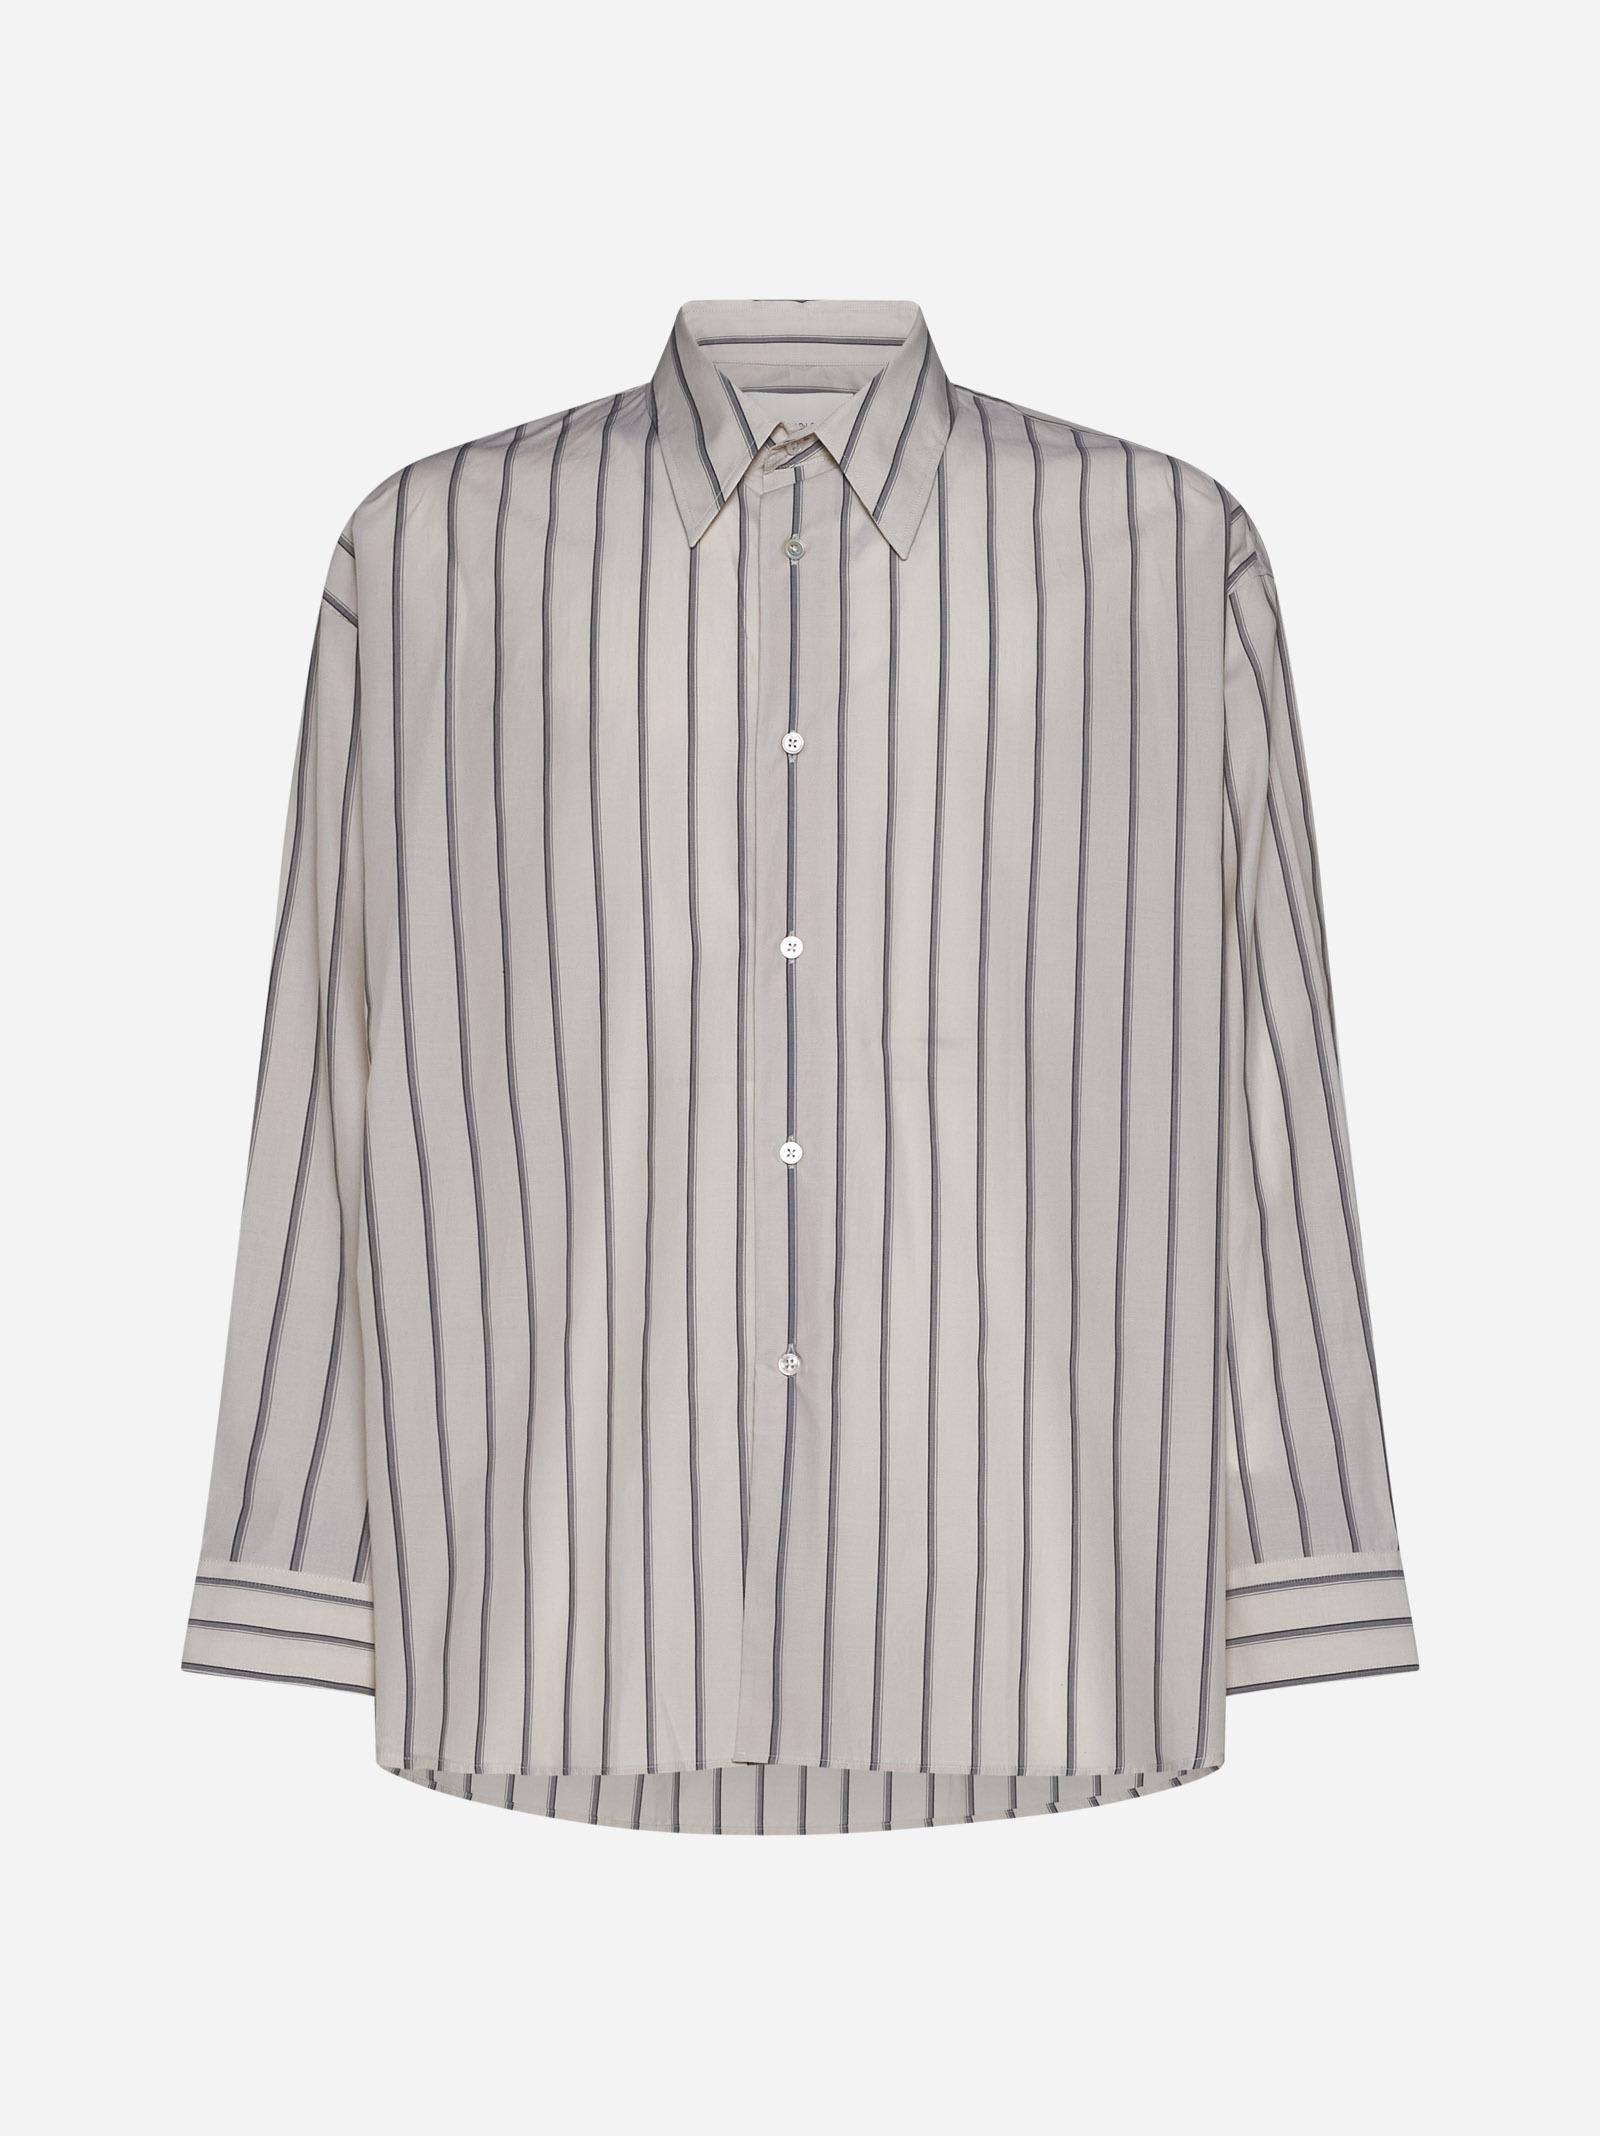 Studio Nicholson Loche Pinstriped Cotton Shirt In Beige